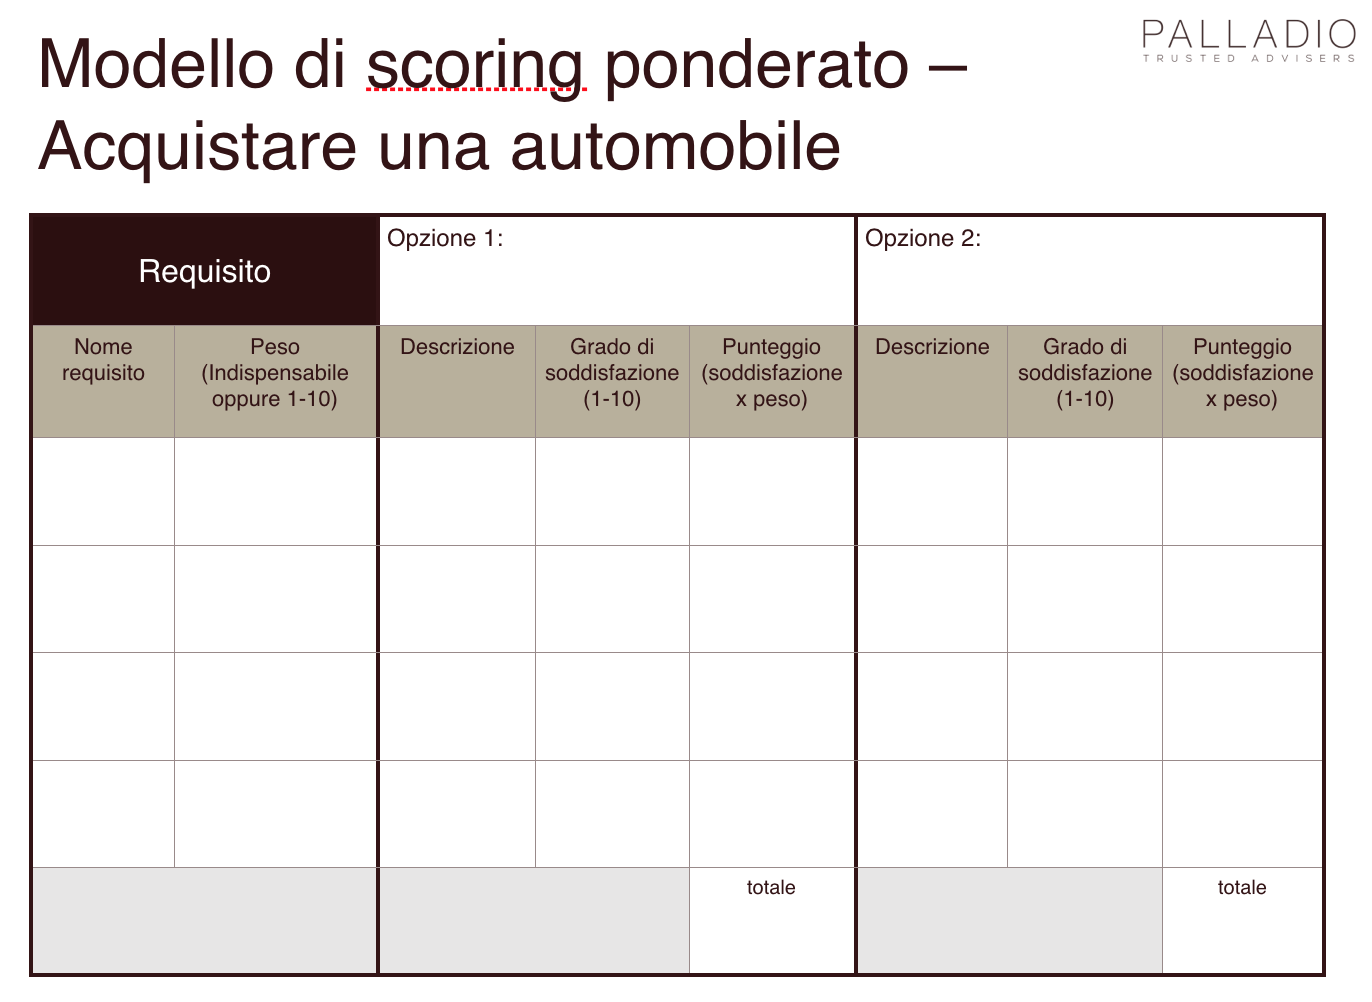 Figura 4 – La matrice di valutazione sul modello di scoring ponderato; l’esempio applicativo si riferisce alla scelta di una automobile.